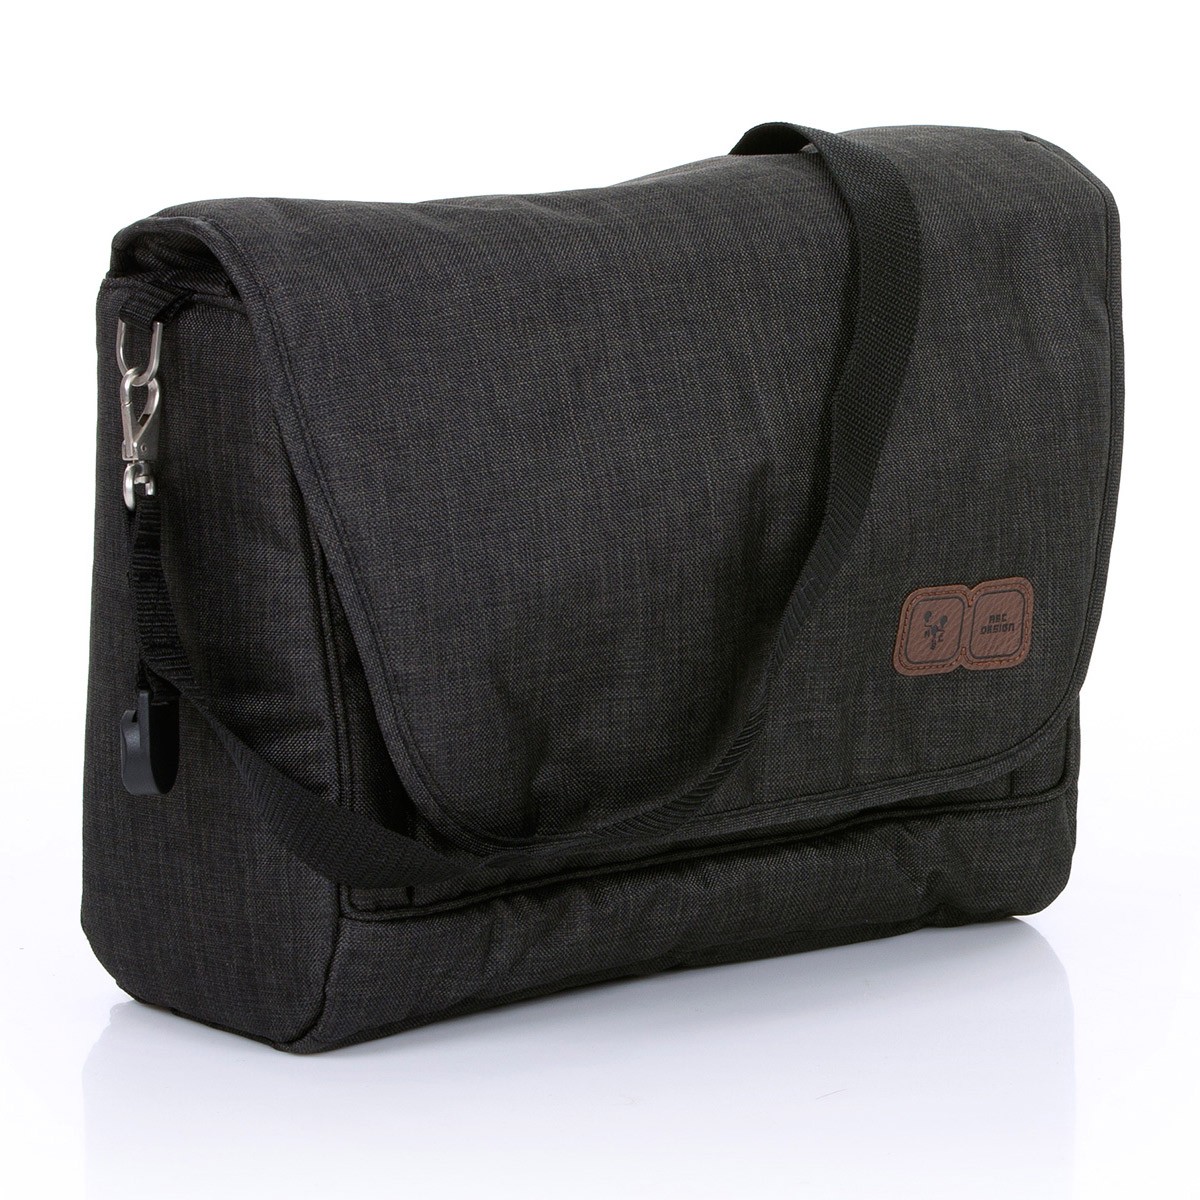 Bolsa Maternidade Fashion Bag Diversos Compartimentos - Abc Design